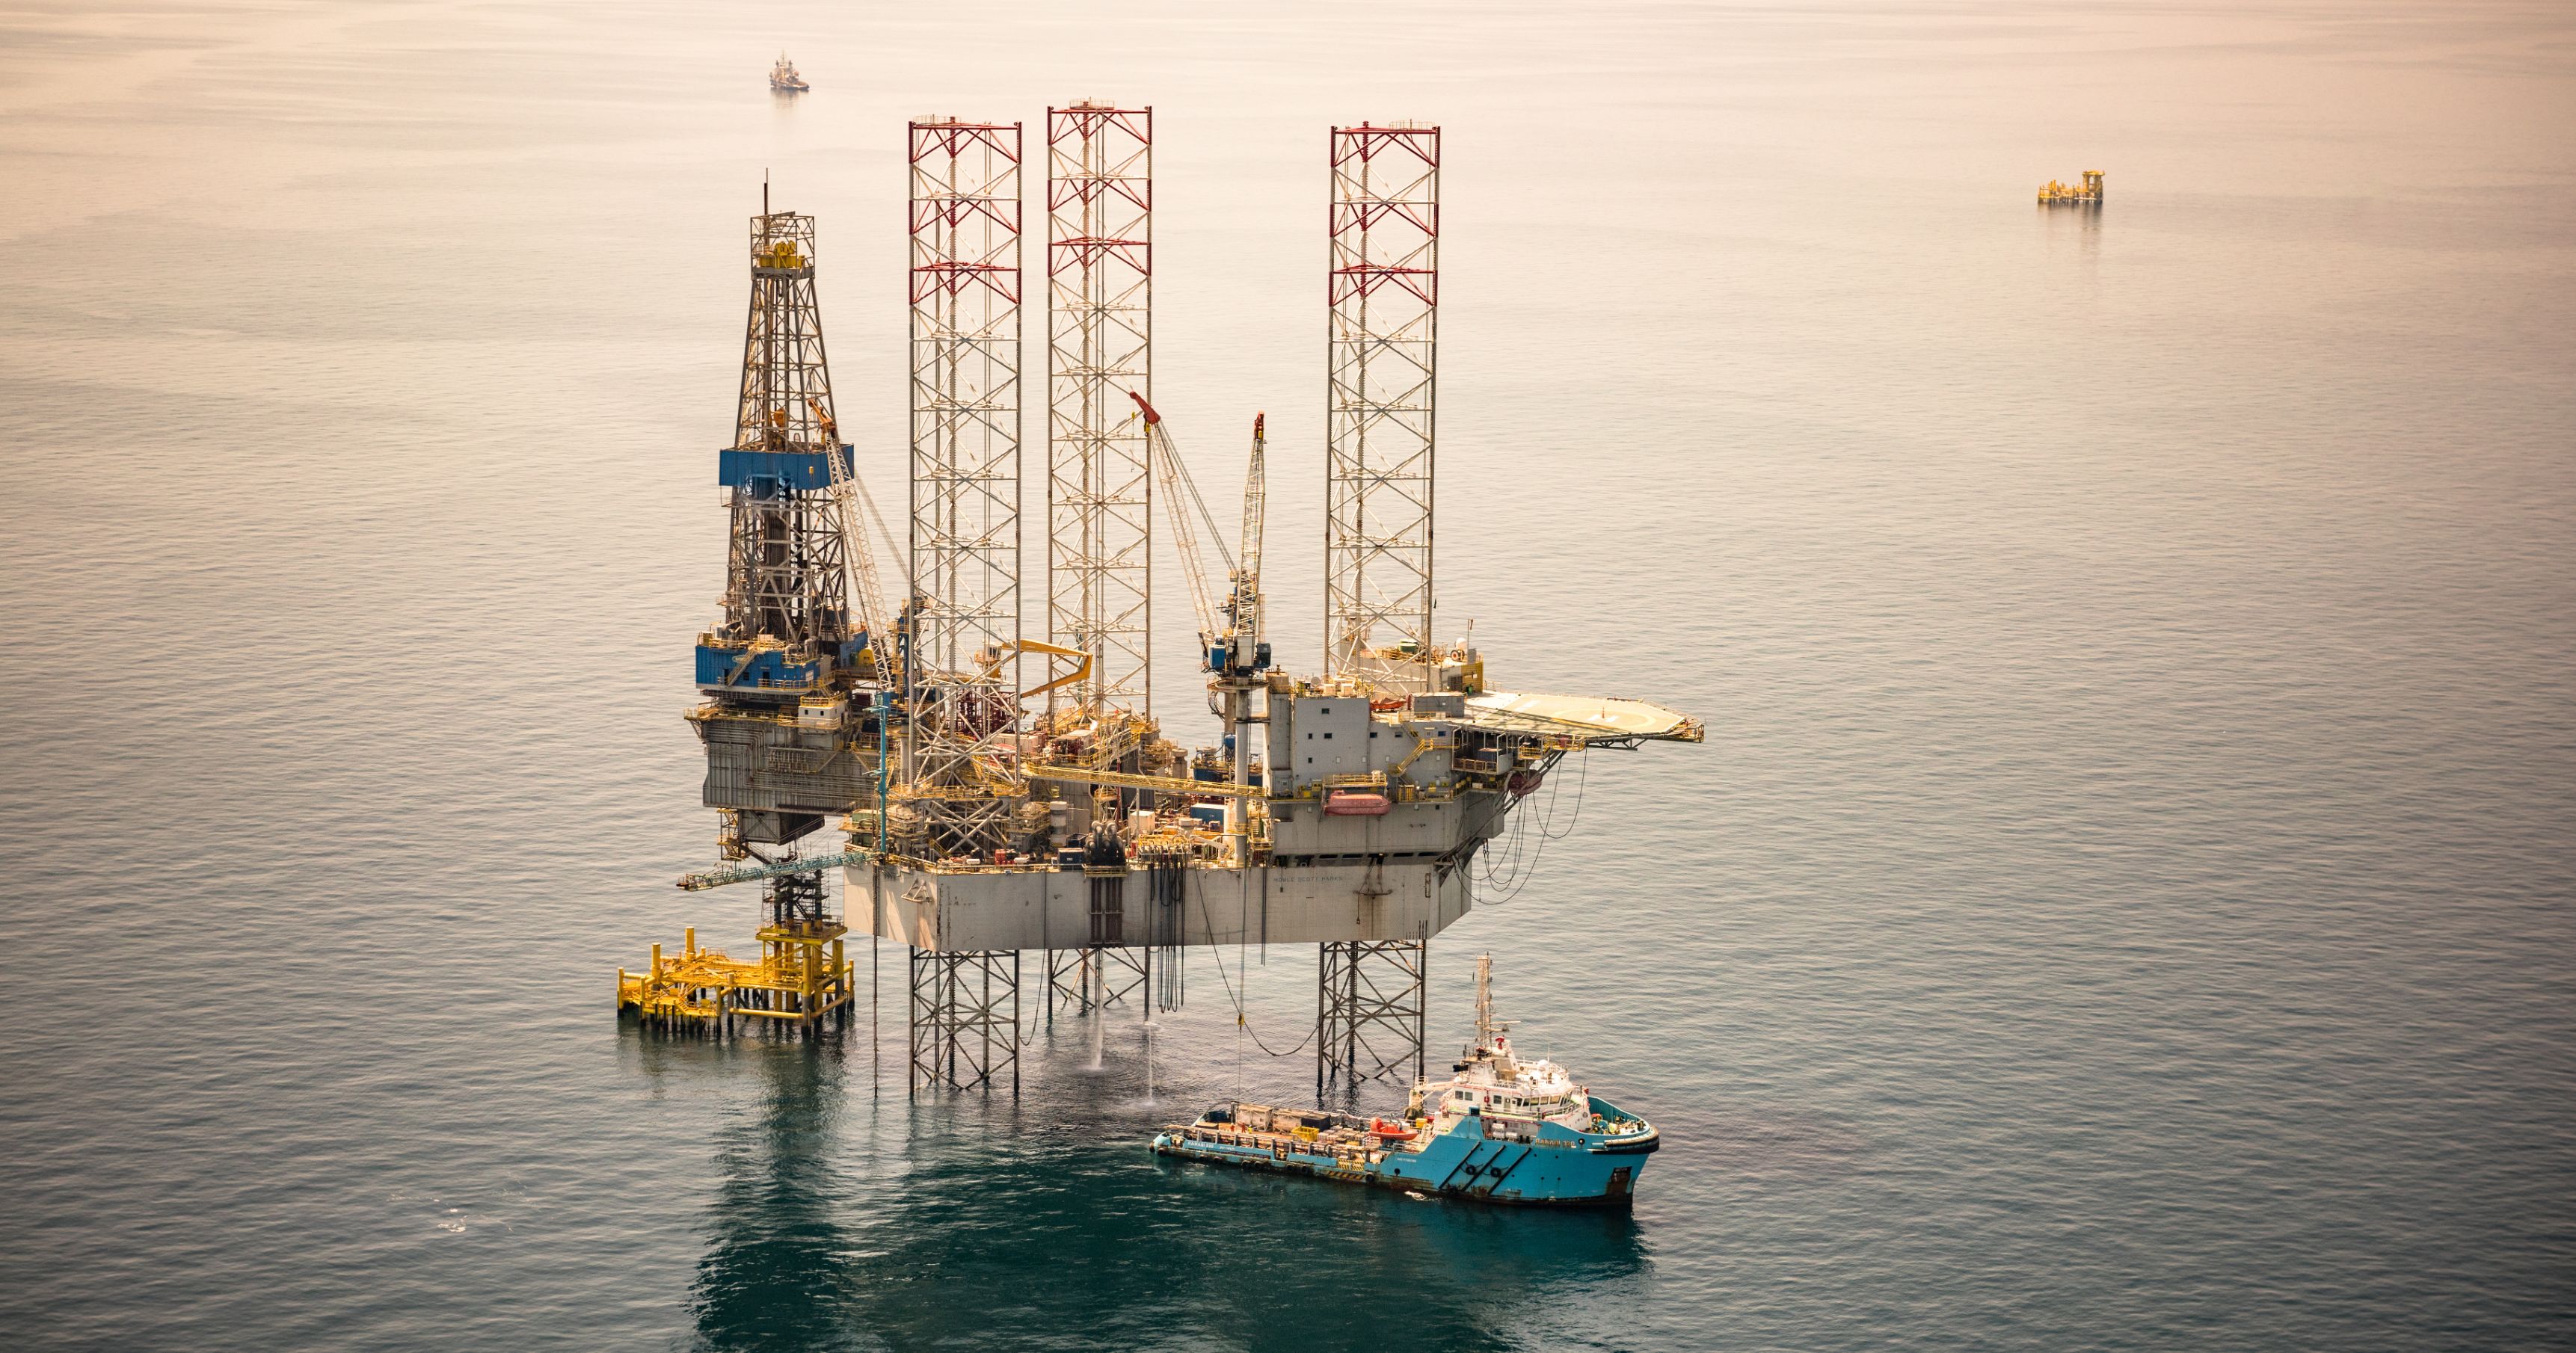 تحديثات النفط – النفط الخام ؛  ستوفر أرامكو السعودية التخصيص الكامل للمشترين في شمال آسيا